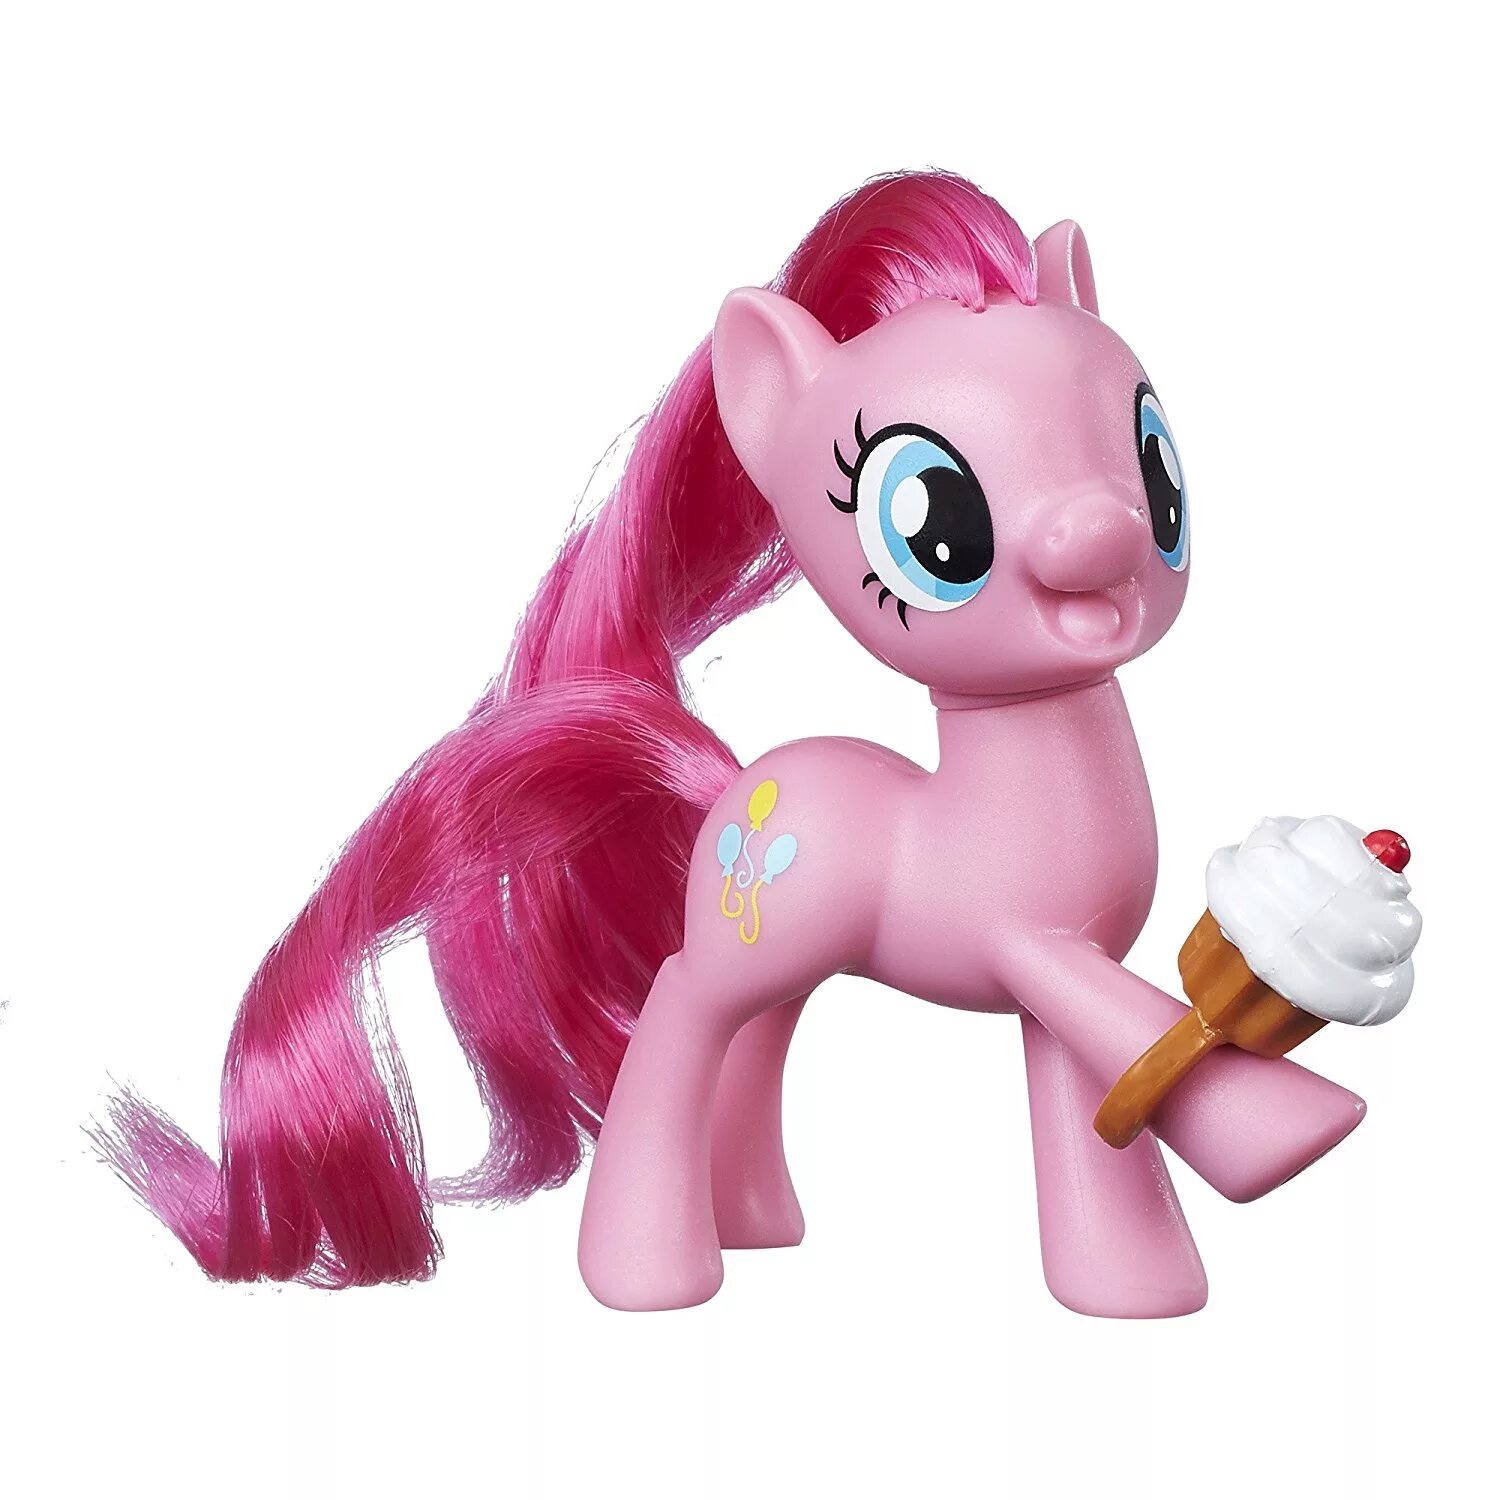 Литл пони хасбро. Фигурка my little Pony пони-подружки Hasbro b8924. МЛП игрушка Пинки Пай. Игрушка пони Пинки Пай Hasbro. Фигурка Hasbro Pinkie pie b9624.